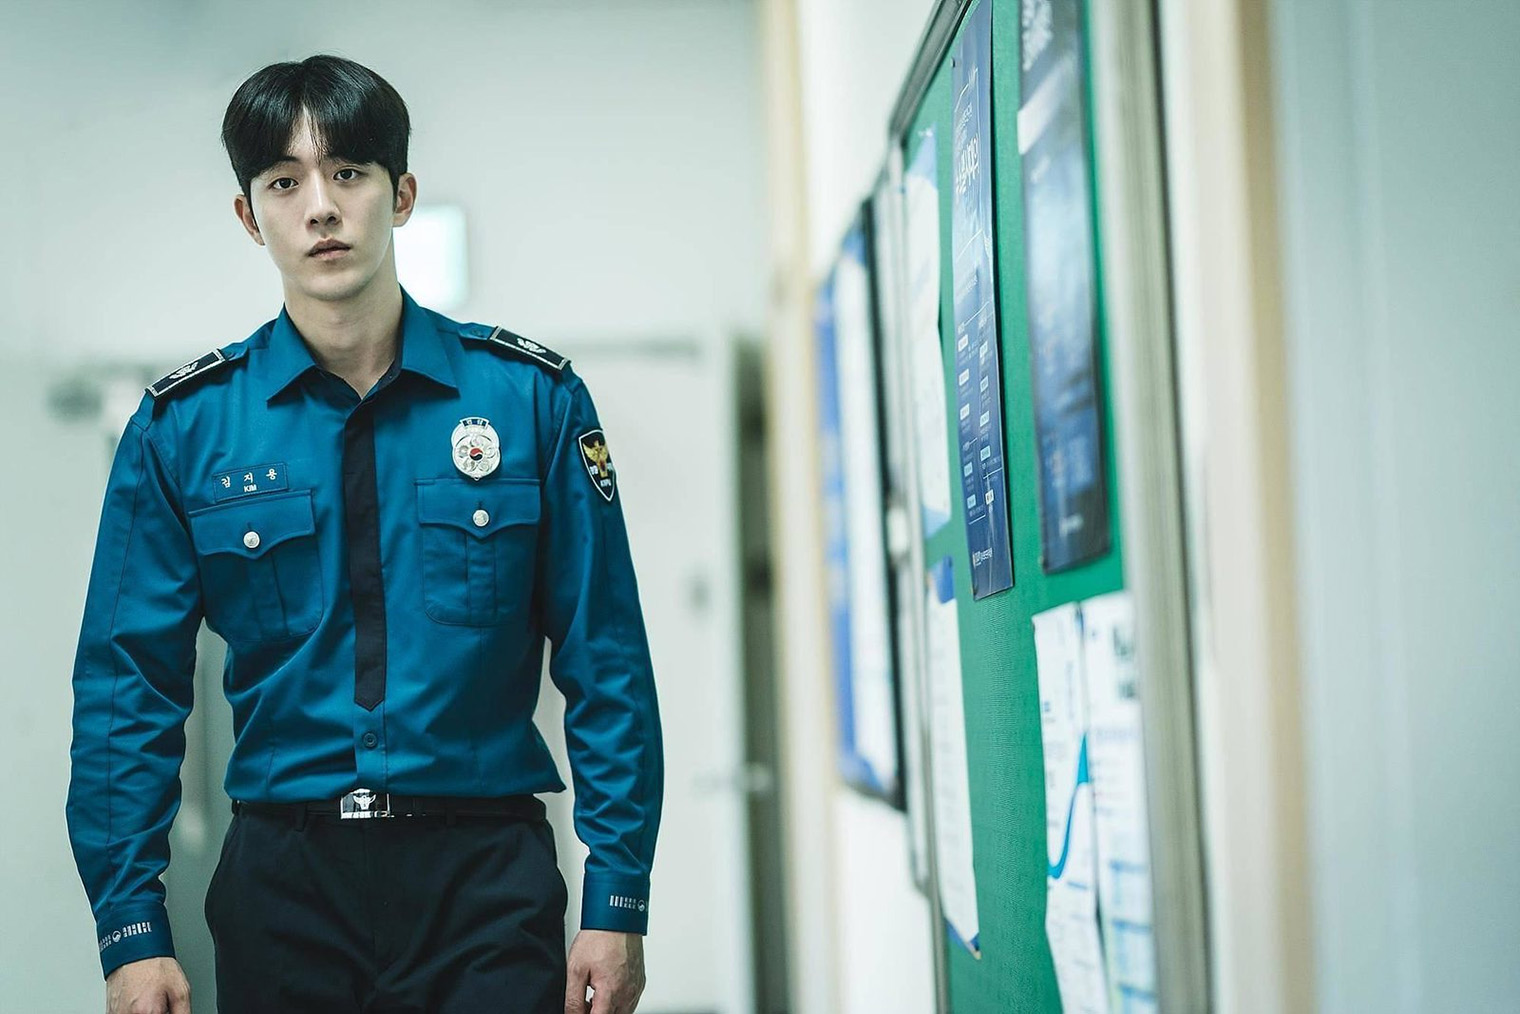 «Линчеватель» — последний на данный момент сериал с Нам Джу⁠-⁠хёком. В марте 2023 года актер поступил на службу в полицейский отдел армии. Кадр: Disney+